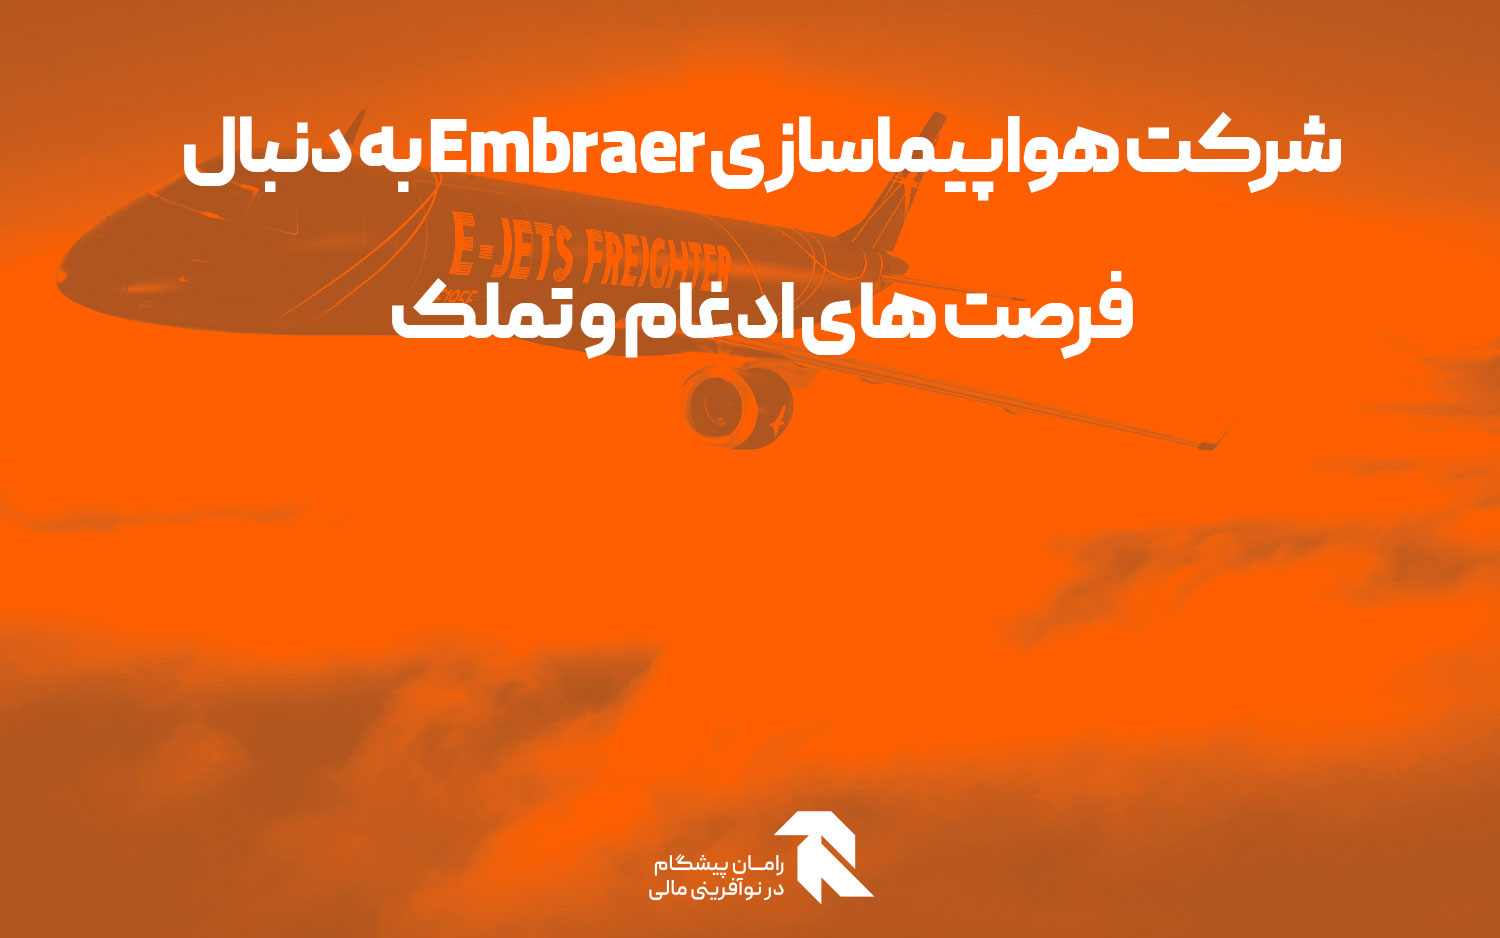 شرکت هواپیماسازی Embraer به دنبال فرصت های ادغام و تملک